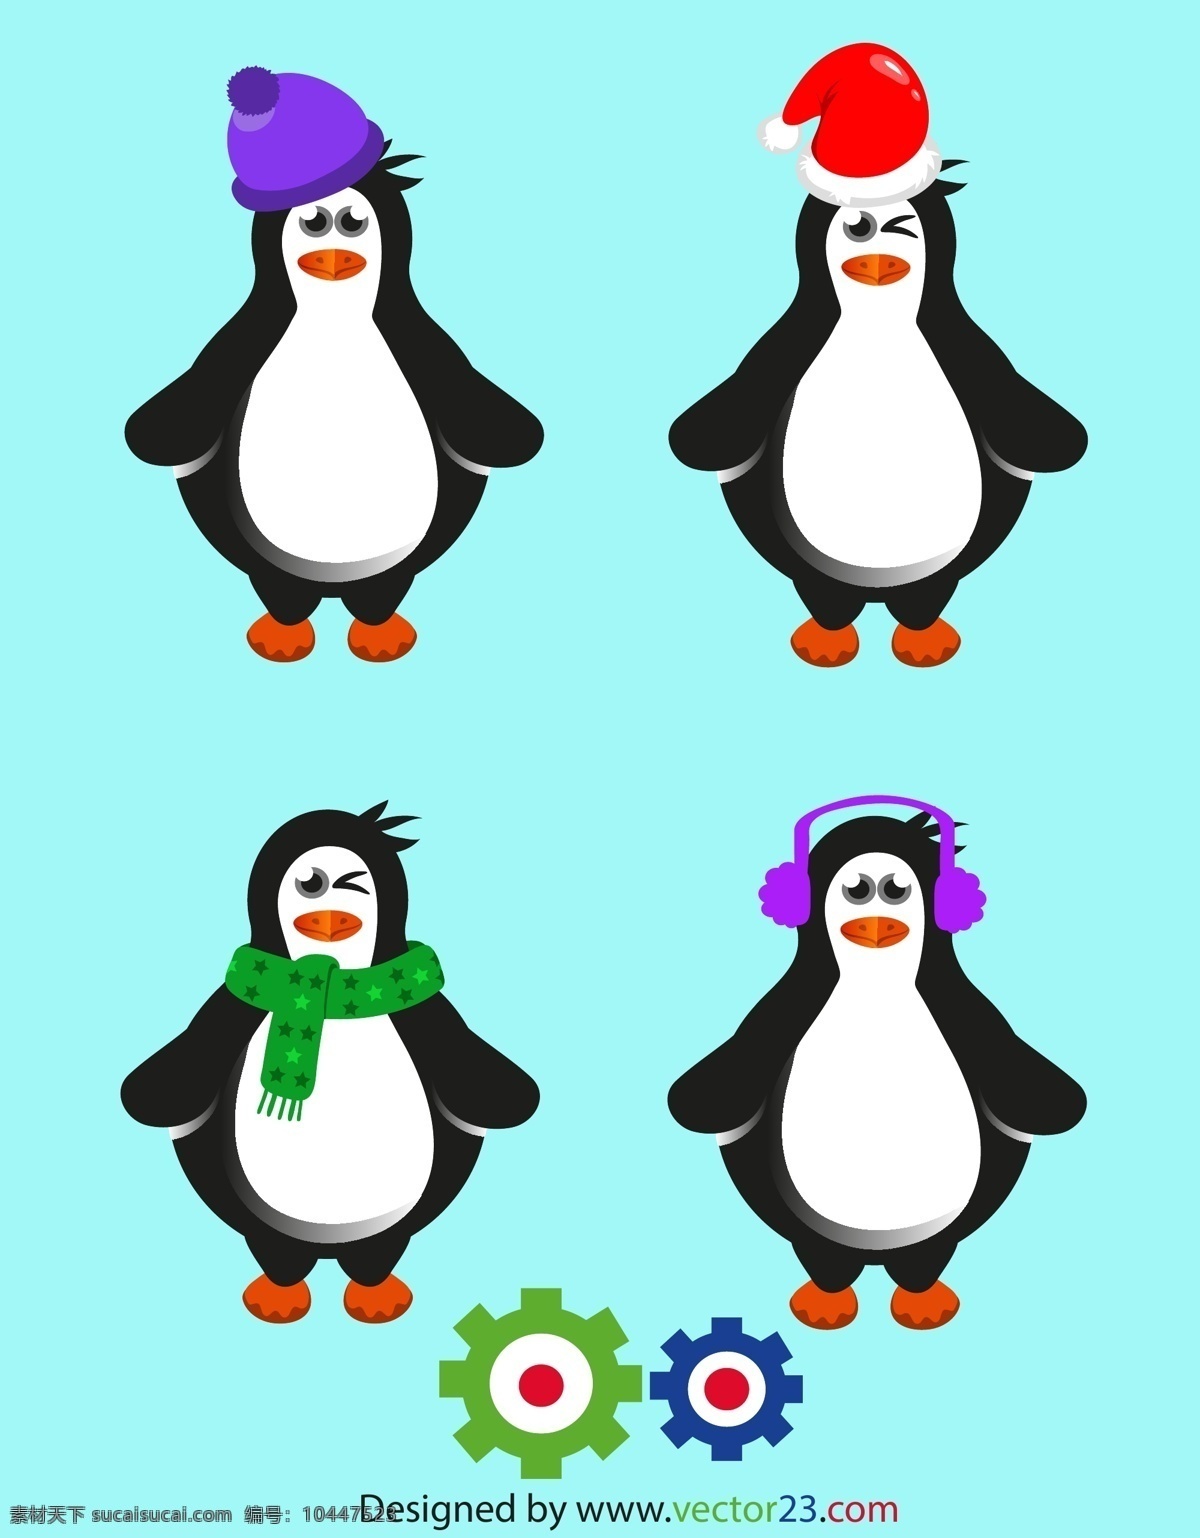 卡通企鹅素材 卡通企鹅 企鹅 动物